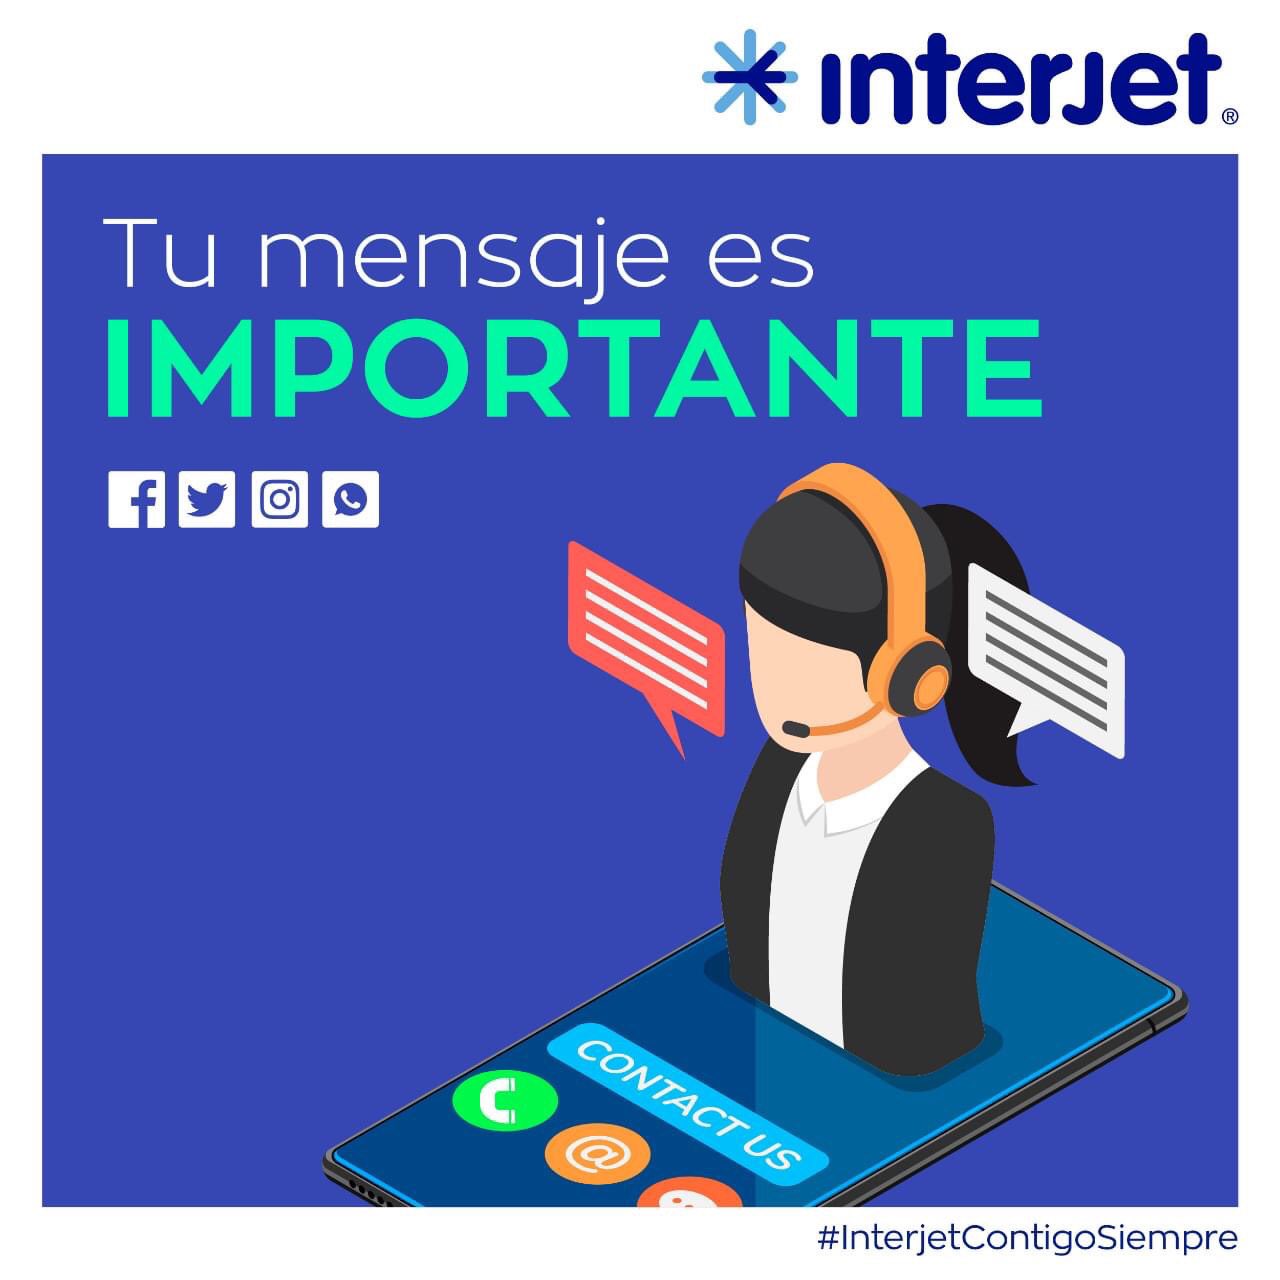 Interjet (@interjet) / Twitter